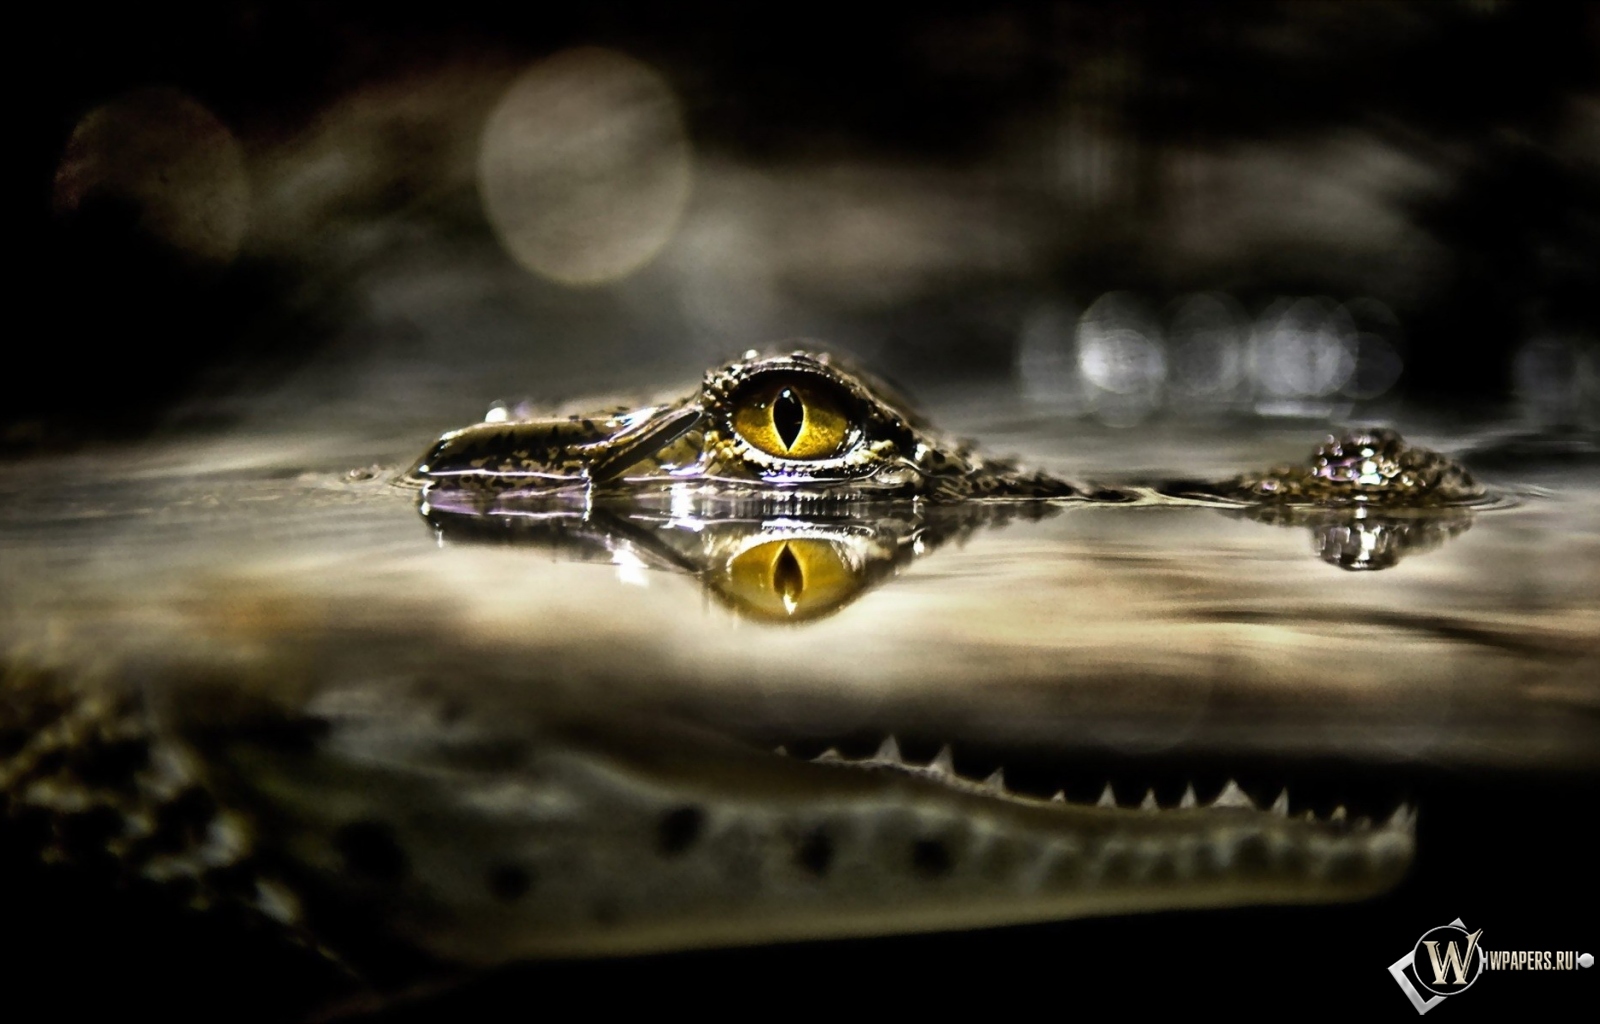 Глаз крокодила 1600x1024